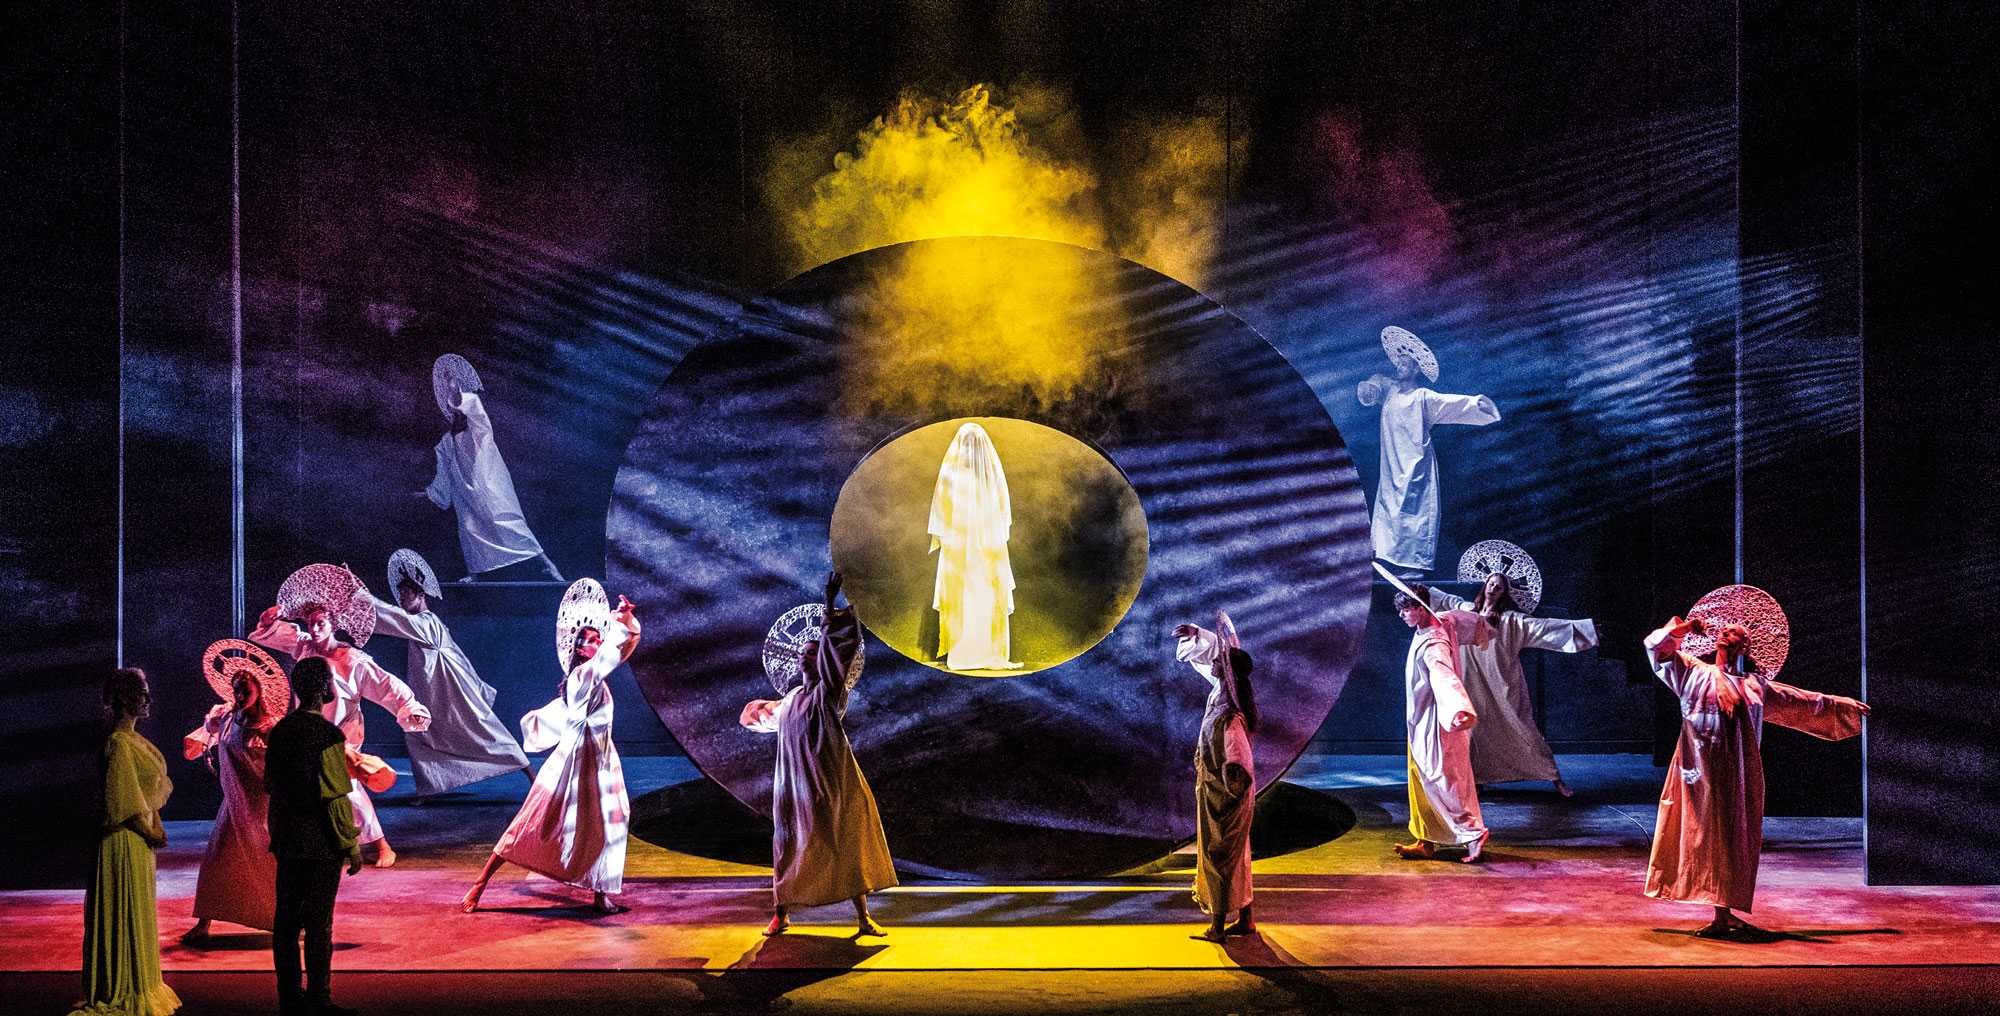 Nuovo spettacolo del colossal “La Divina Commedia” al Teatro Politeama di Catanzaro dal 14 al 17 feb